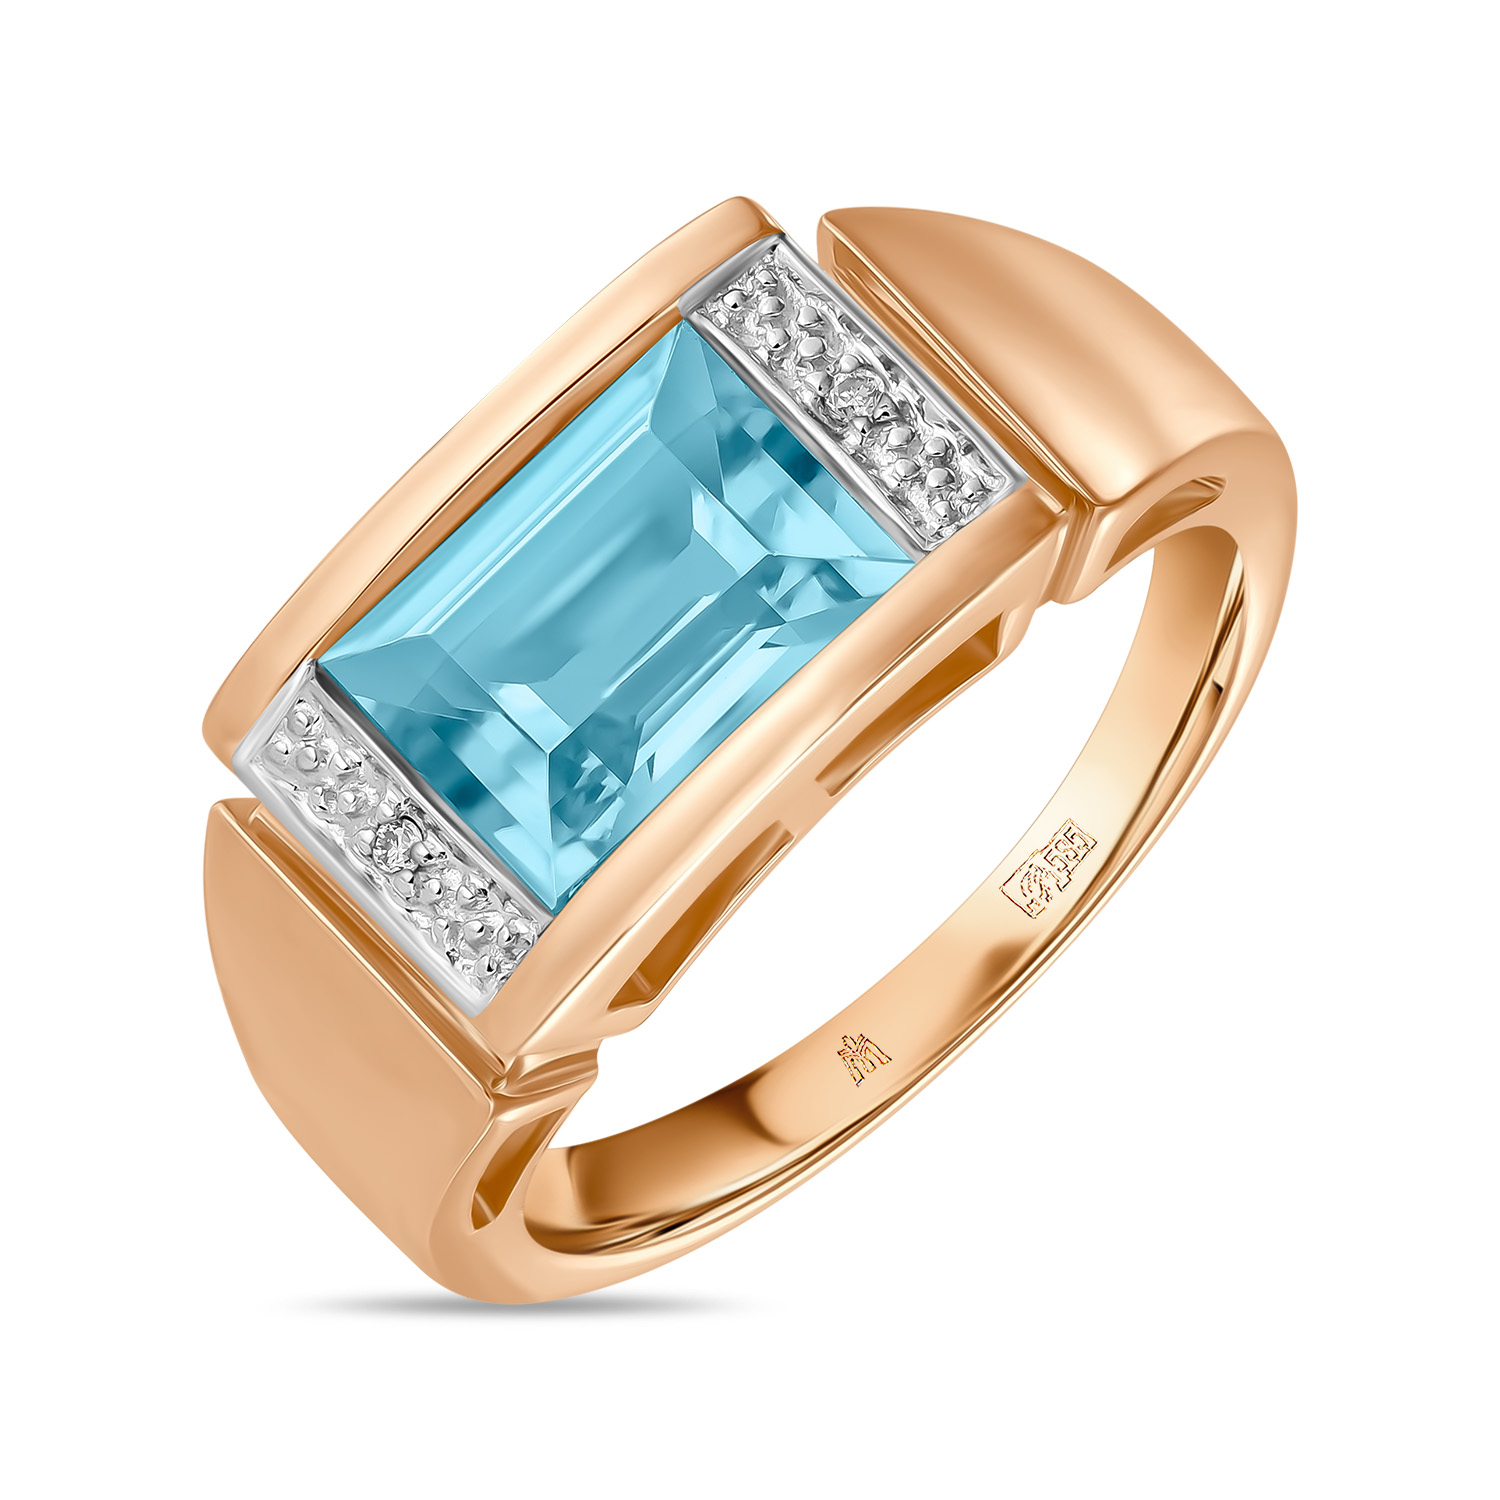 Кольца МЮЗ Золотое кольцо с топазом и бриллиантами кольца мюз золотое кольцо с топазом бриллиантами турмалином и хромдиопсидами